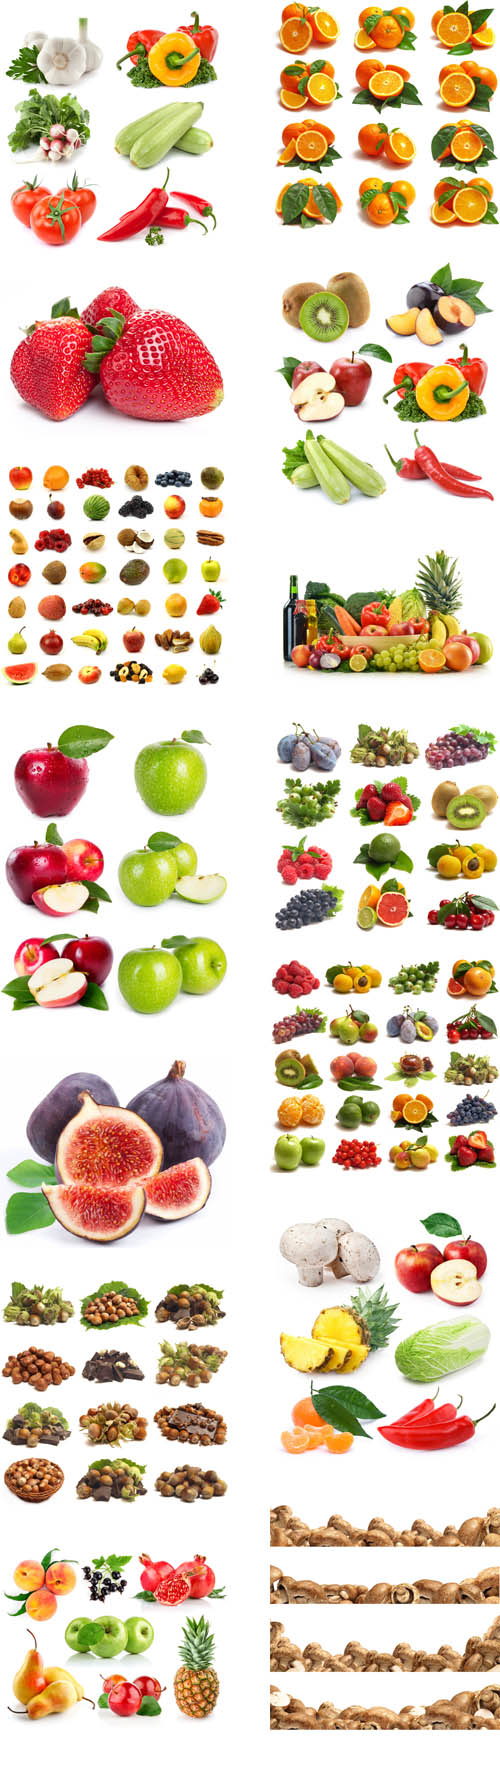 Fresh fruits, vegetables, berries2 0216